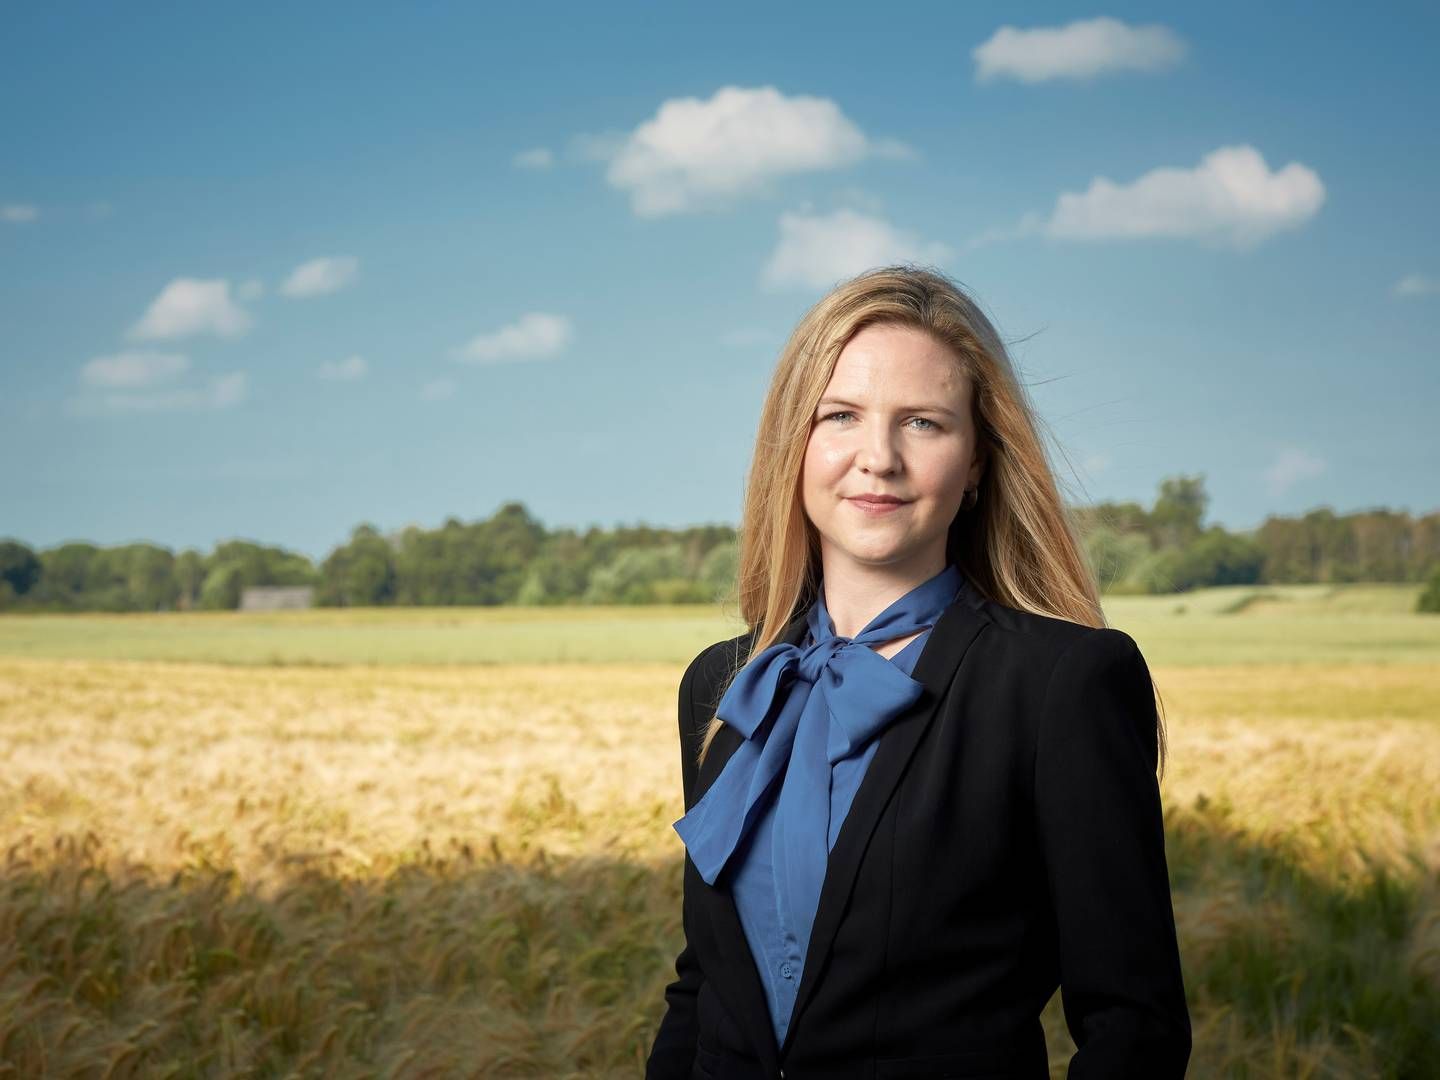 Medstifter og adm. direktør Christina Elgaard trak sig fra Farmbrella i september, og siden har selskabet ikke kunne "skabe fundament for en fornuftig forretning", lyder det. | Foto: Farmbrella